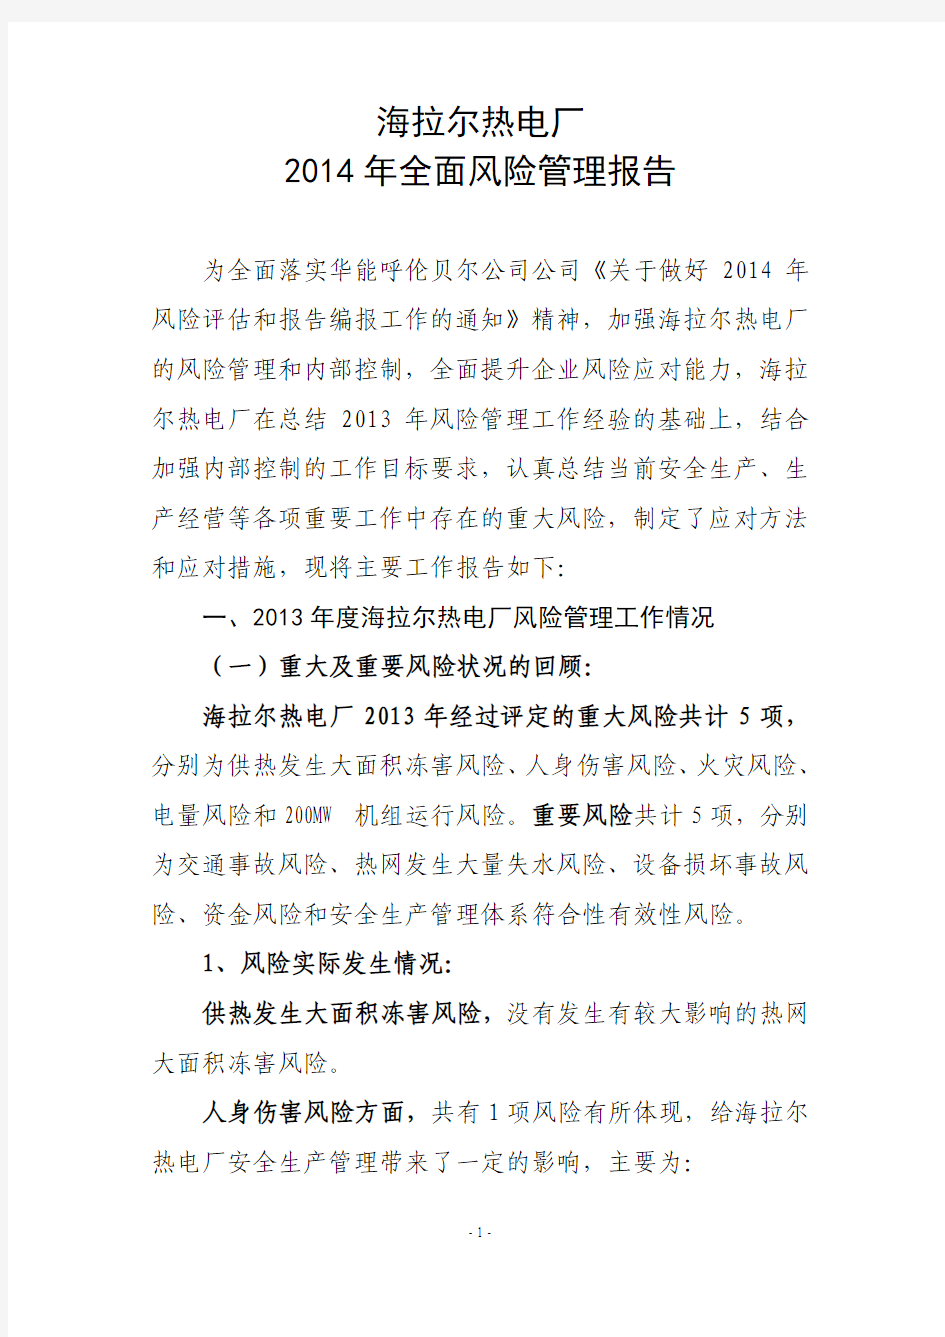 华能呼伦贝尔公司2013年风险报告